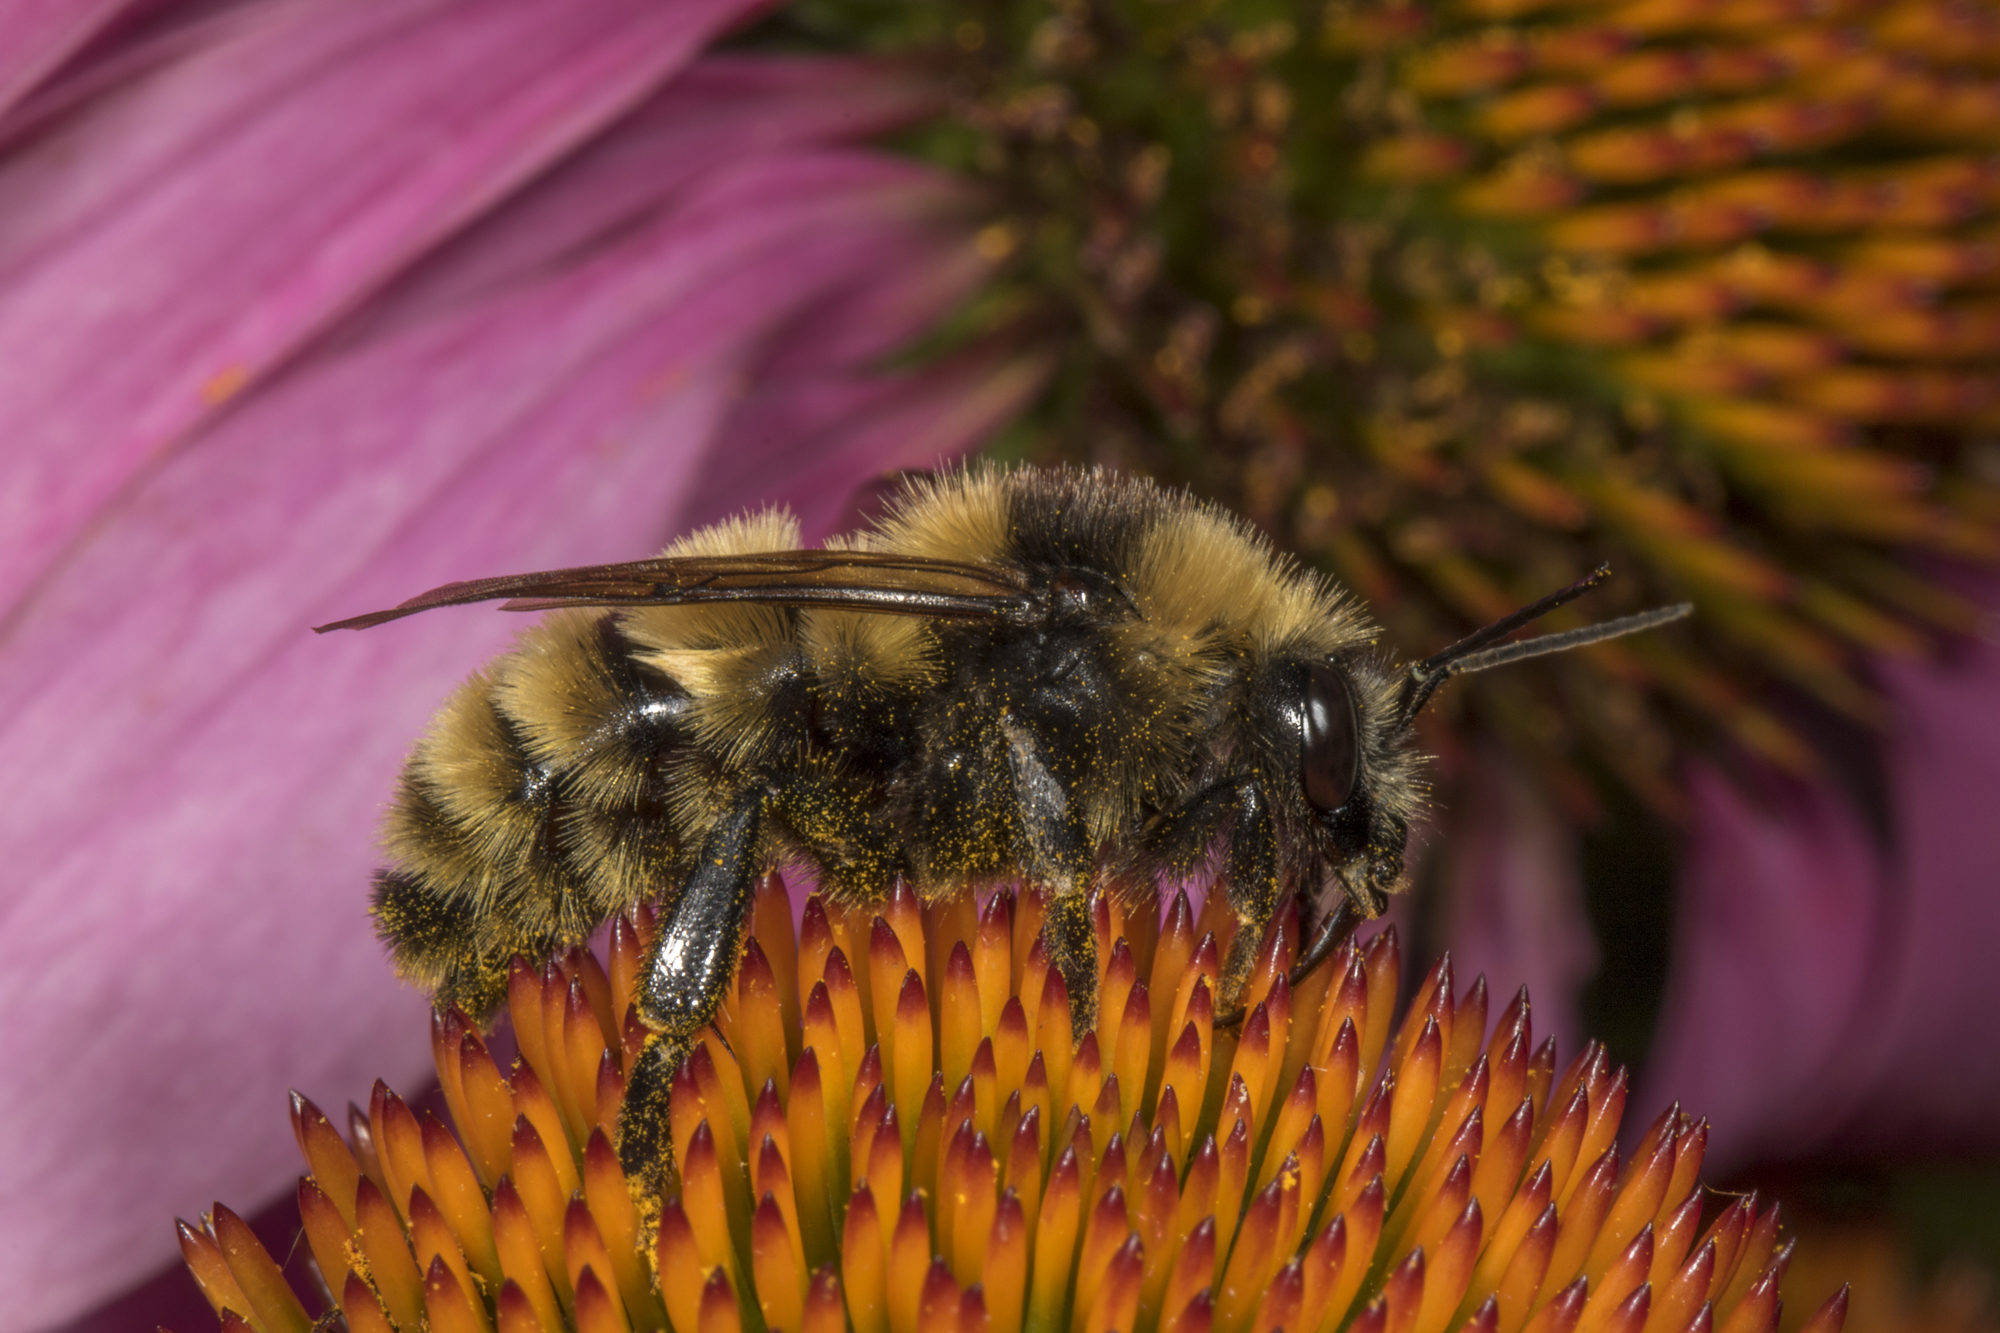 Northern Amber Bumble Bee (Bombus borealis) drone. K.P. McFarland